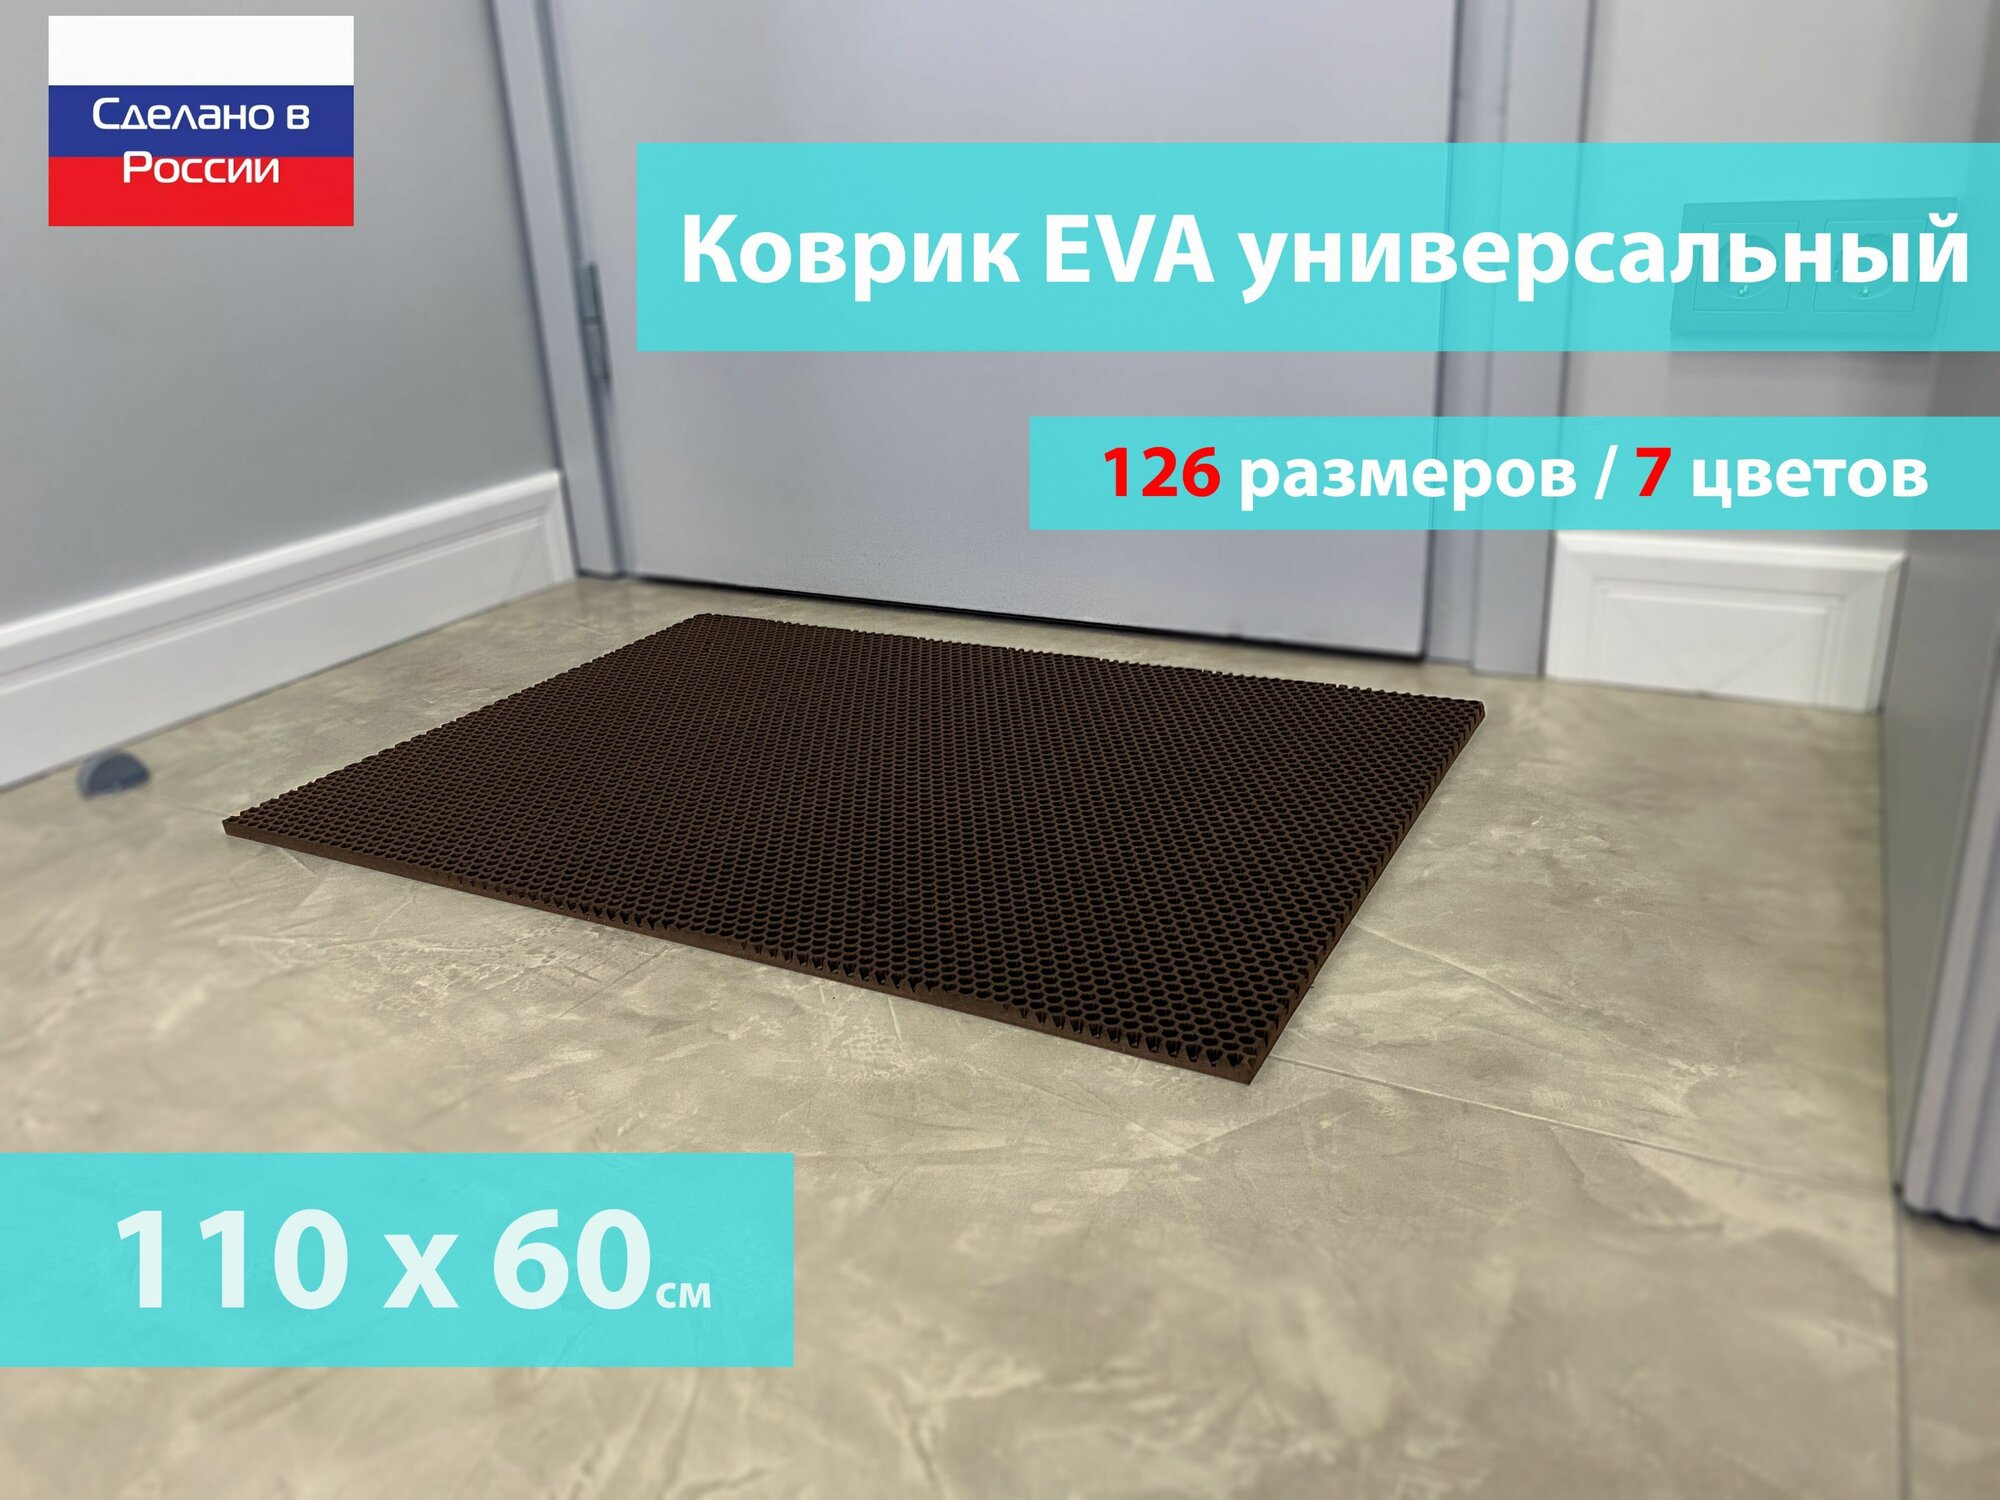 Коврик придверный EVA (ЕВА) в прихожую для обуви / Ковер ЭВА на пол перед дверью/ коричневый / размер 110 х 60 см - фотография № 1